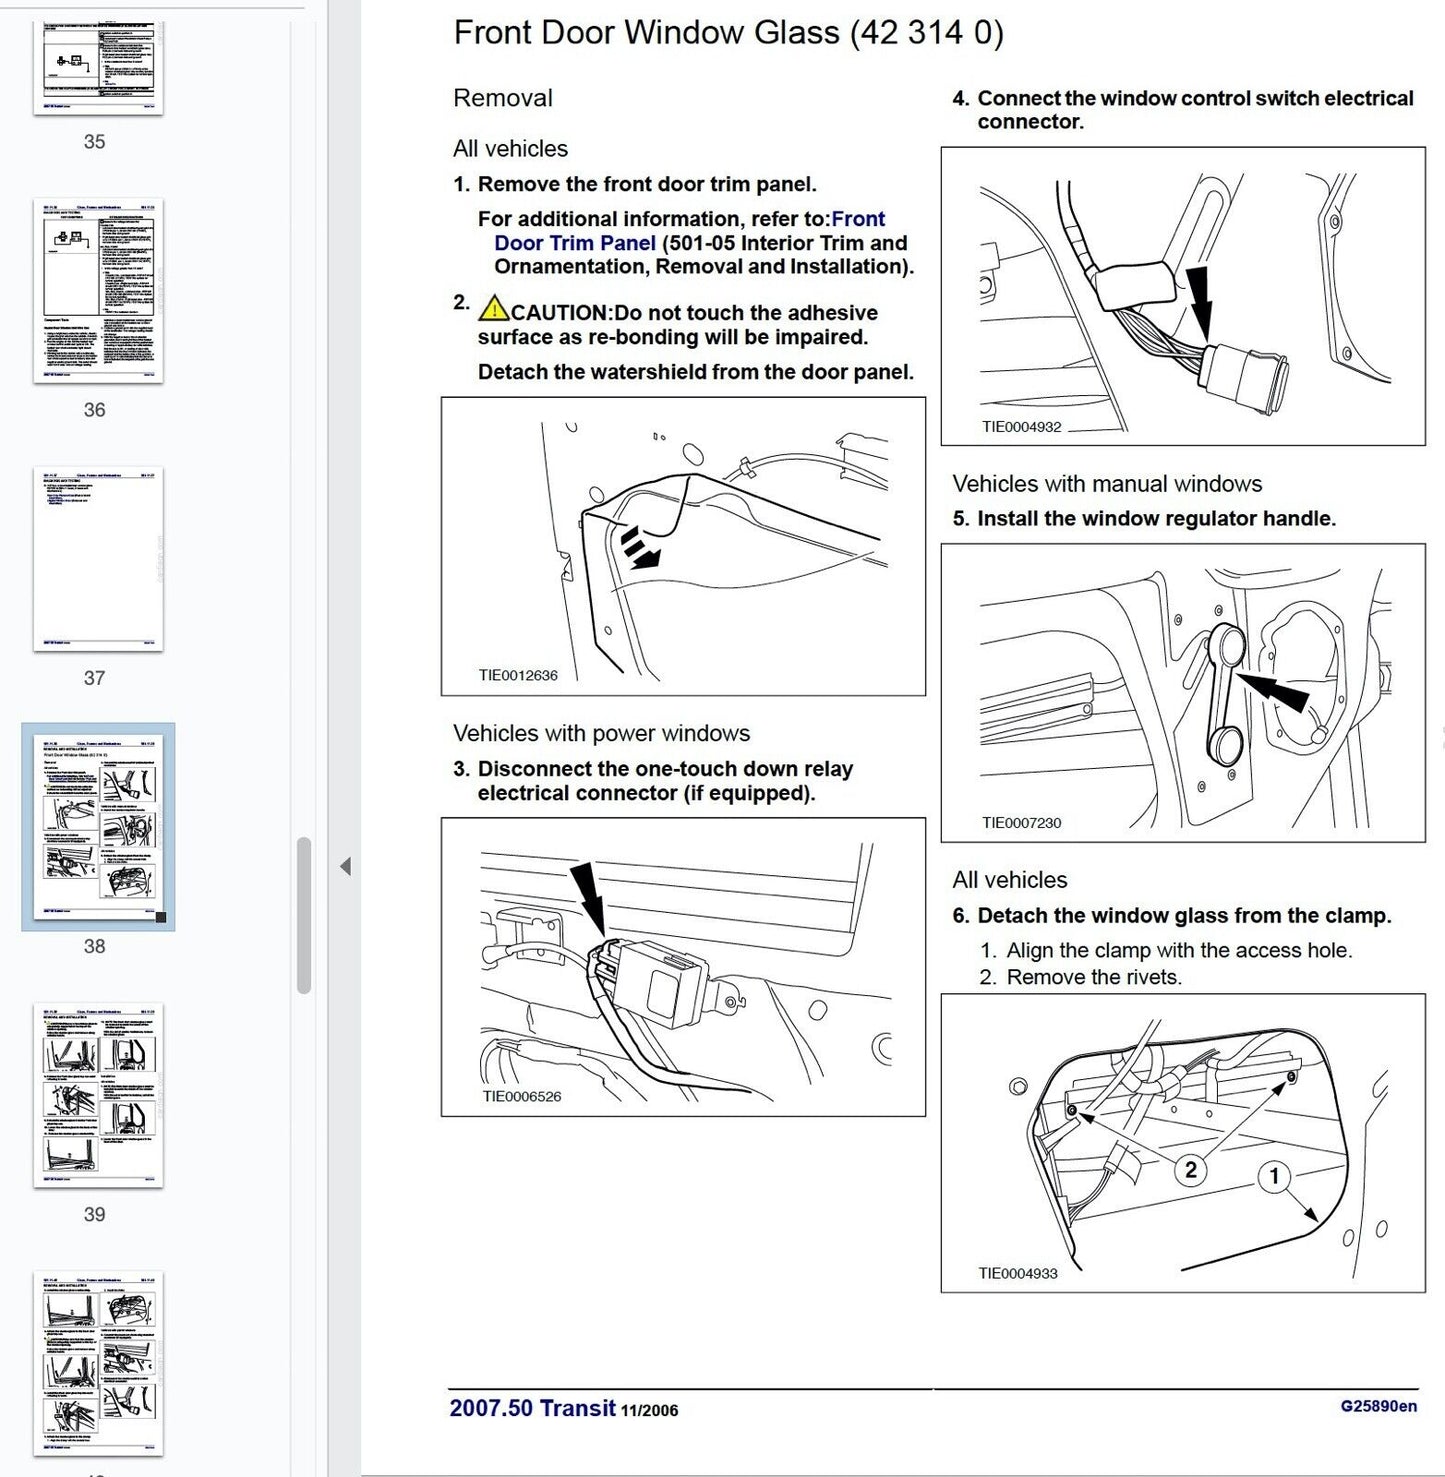 Ford Transit (2006-2013)  manuale officina - repair manual FAST